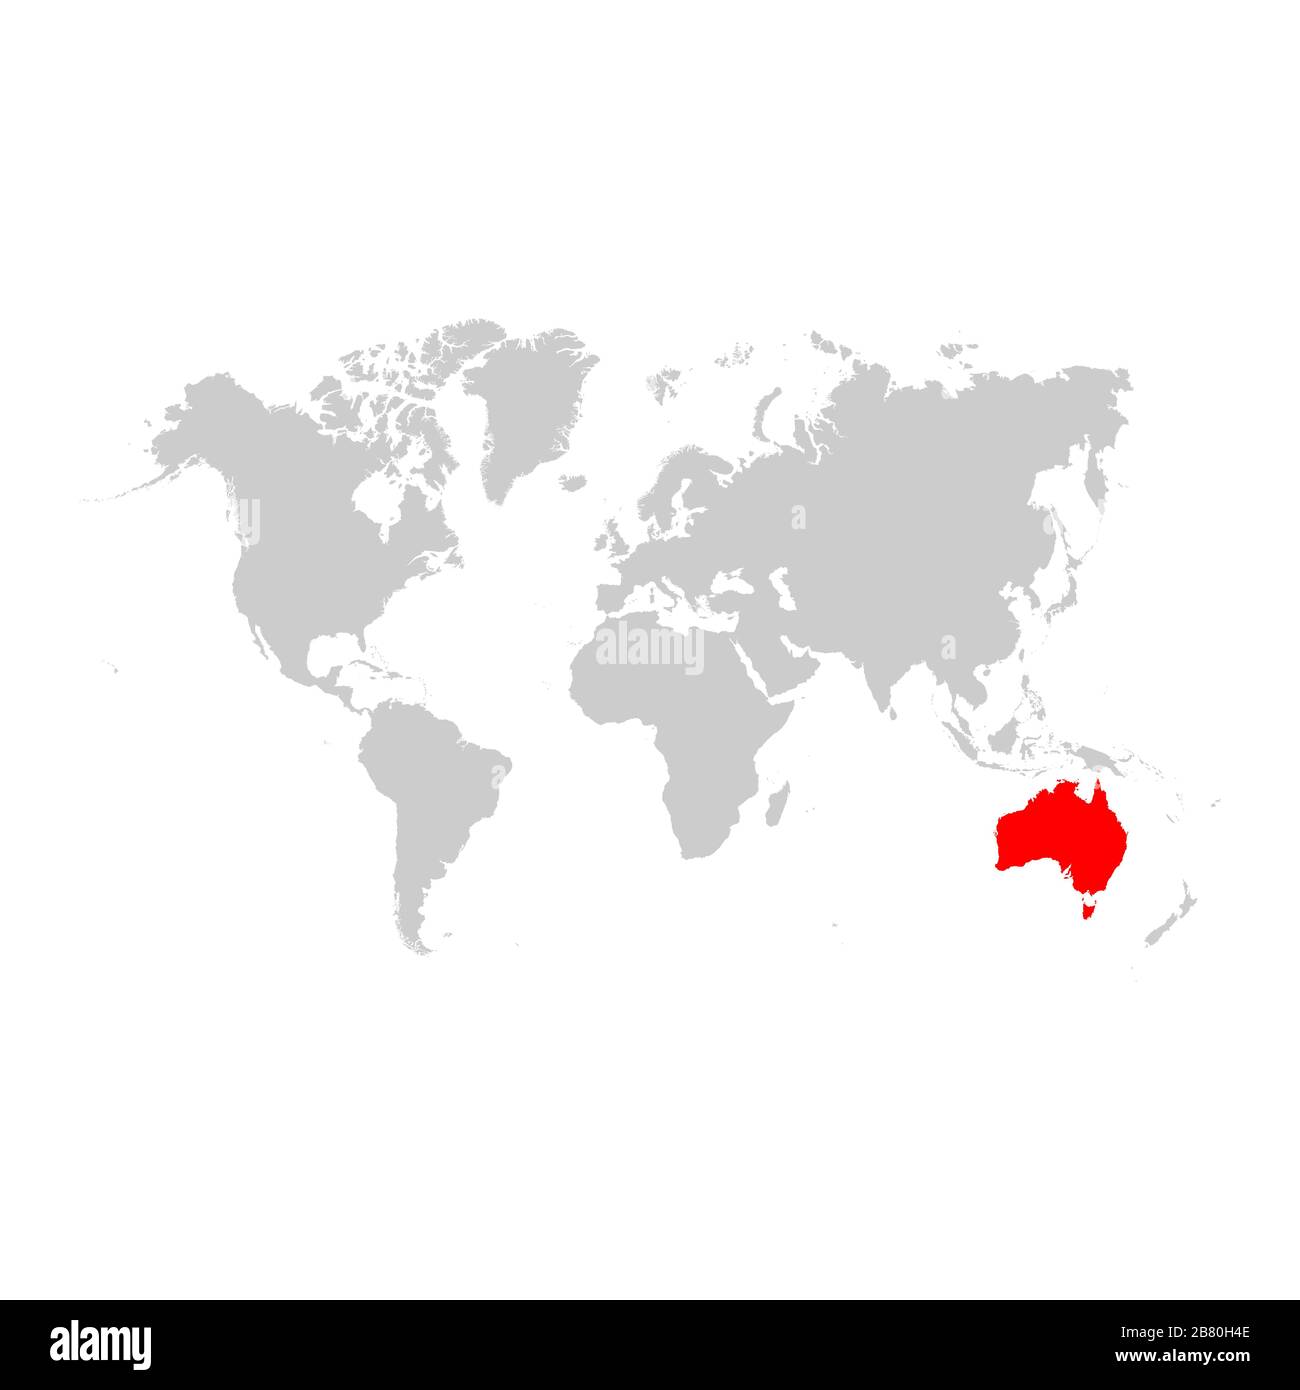 L'Australie sur la carte du monde Image Vectorielle Stock - Alamy